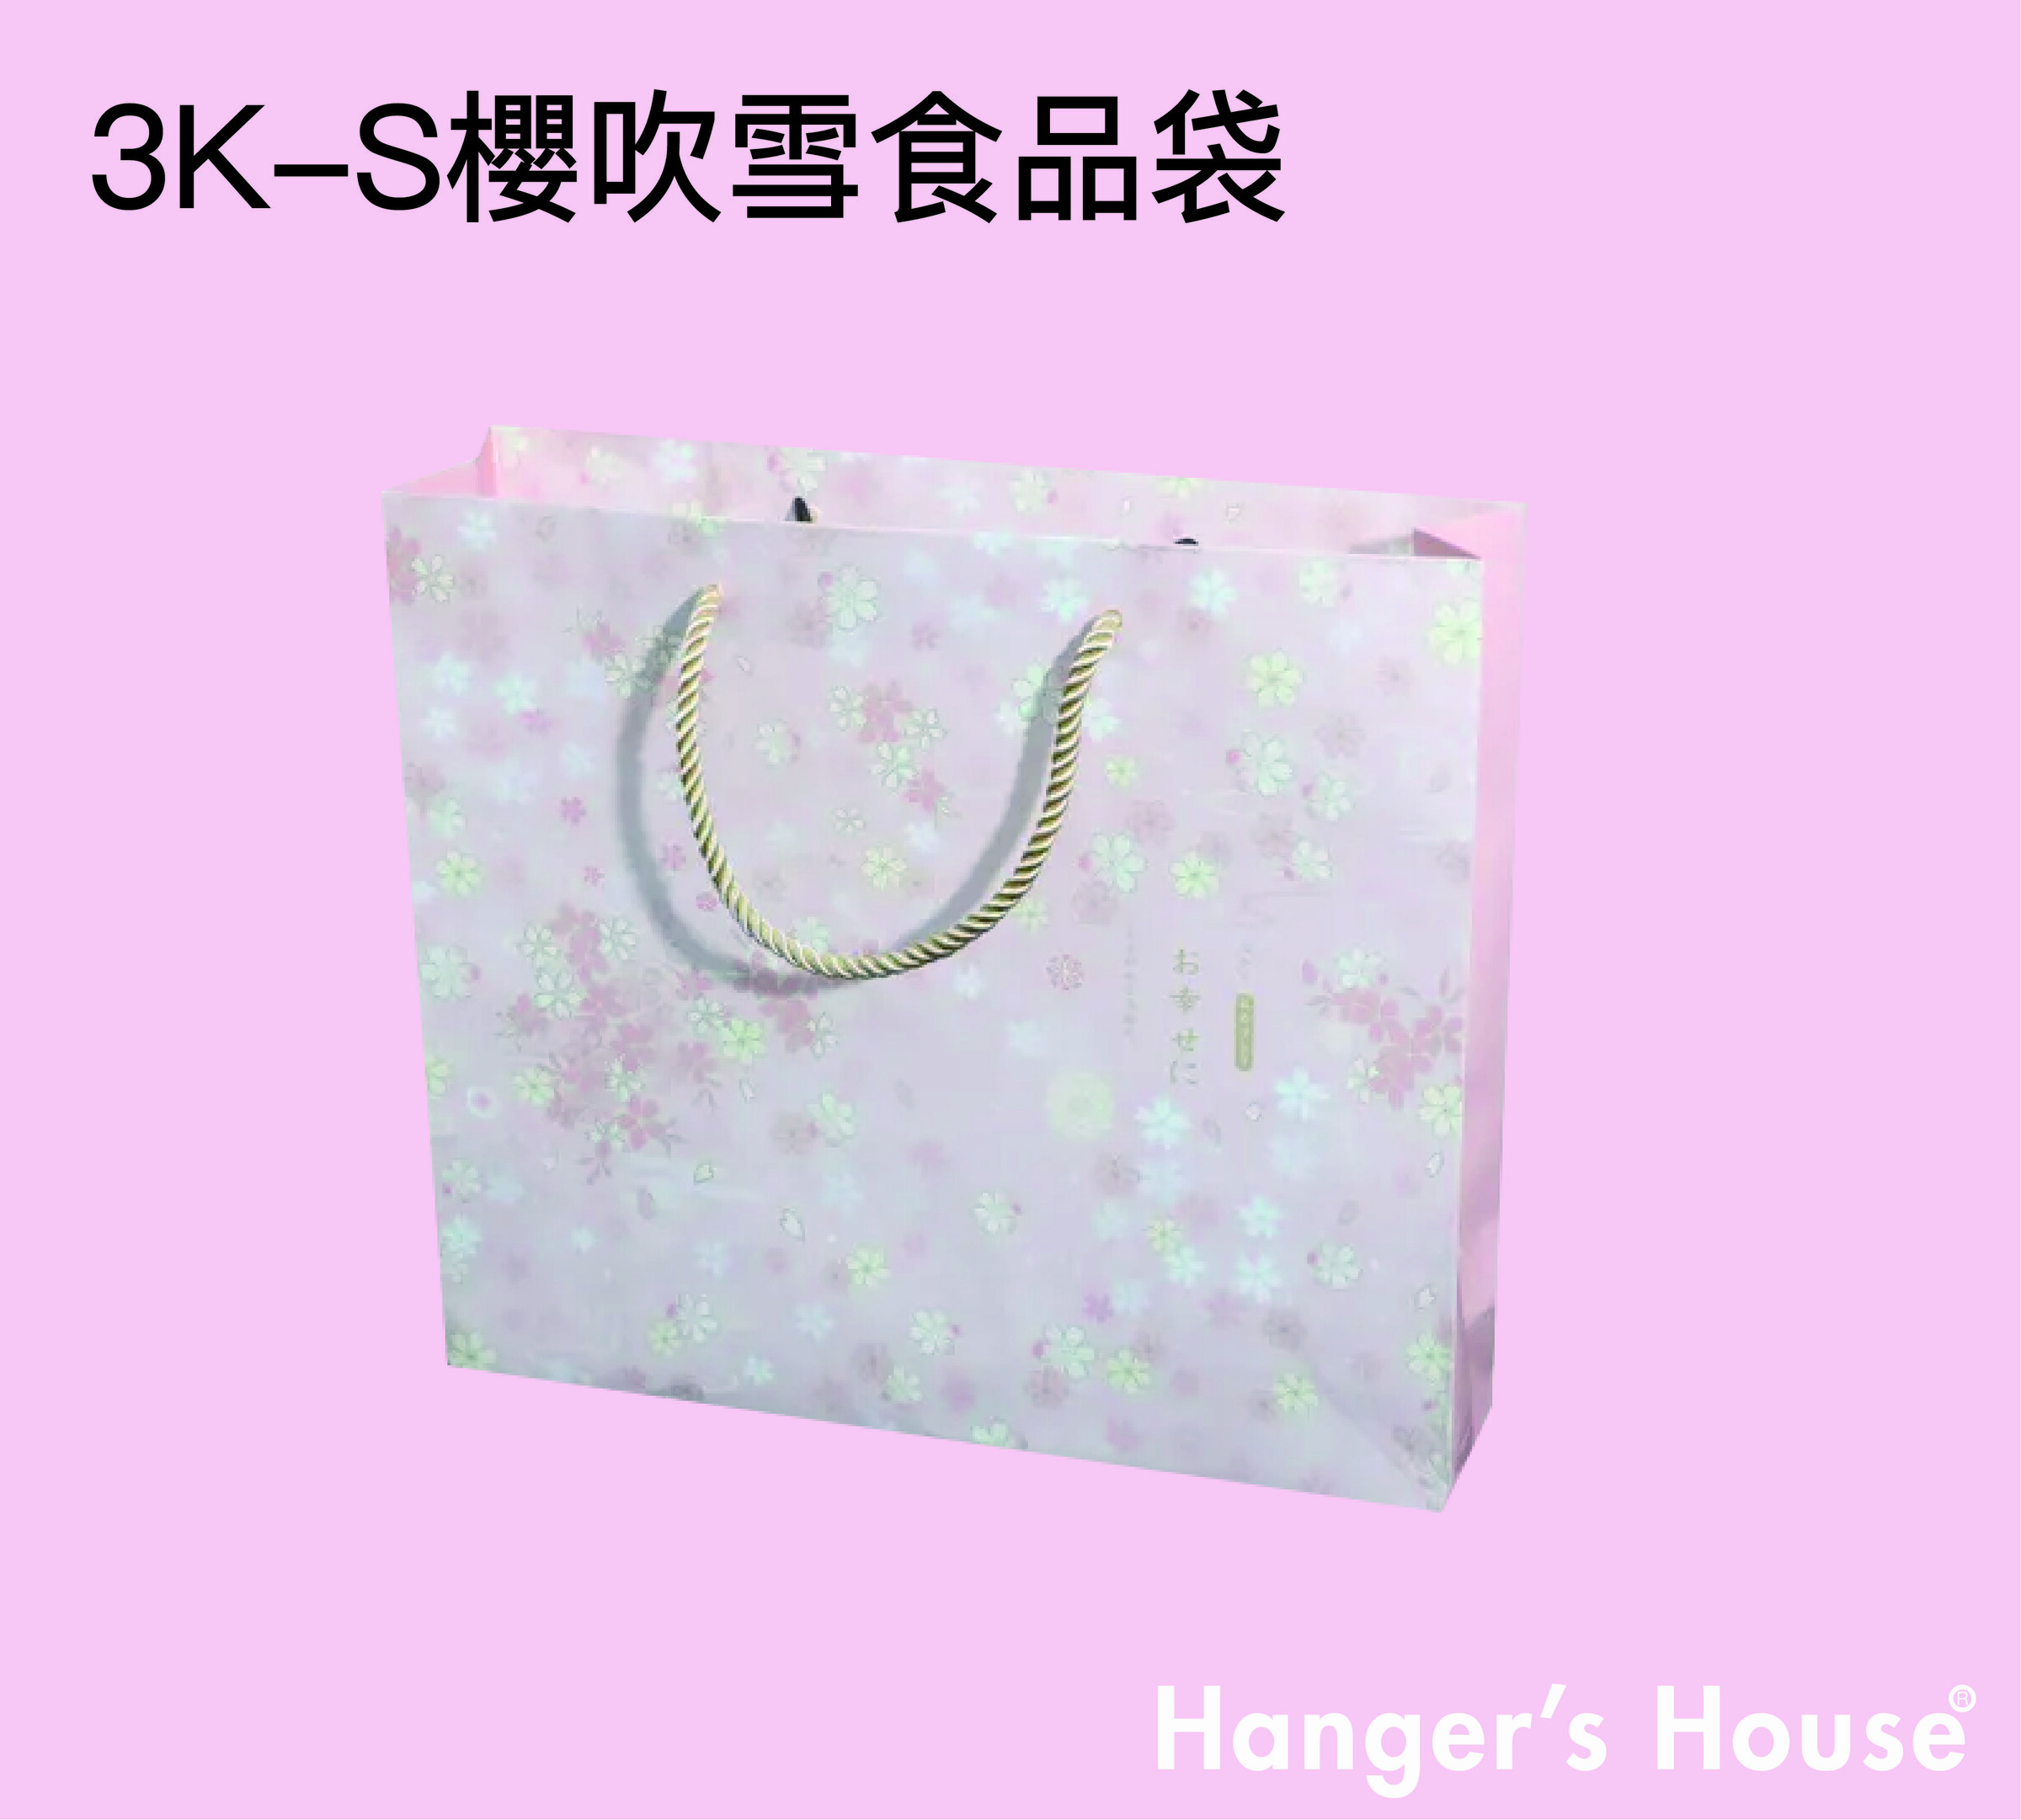 3K-S櫻吹雪食品袋-01.jpg